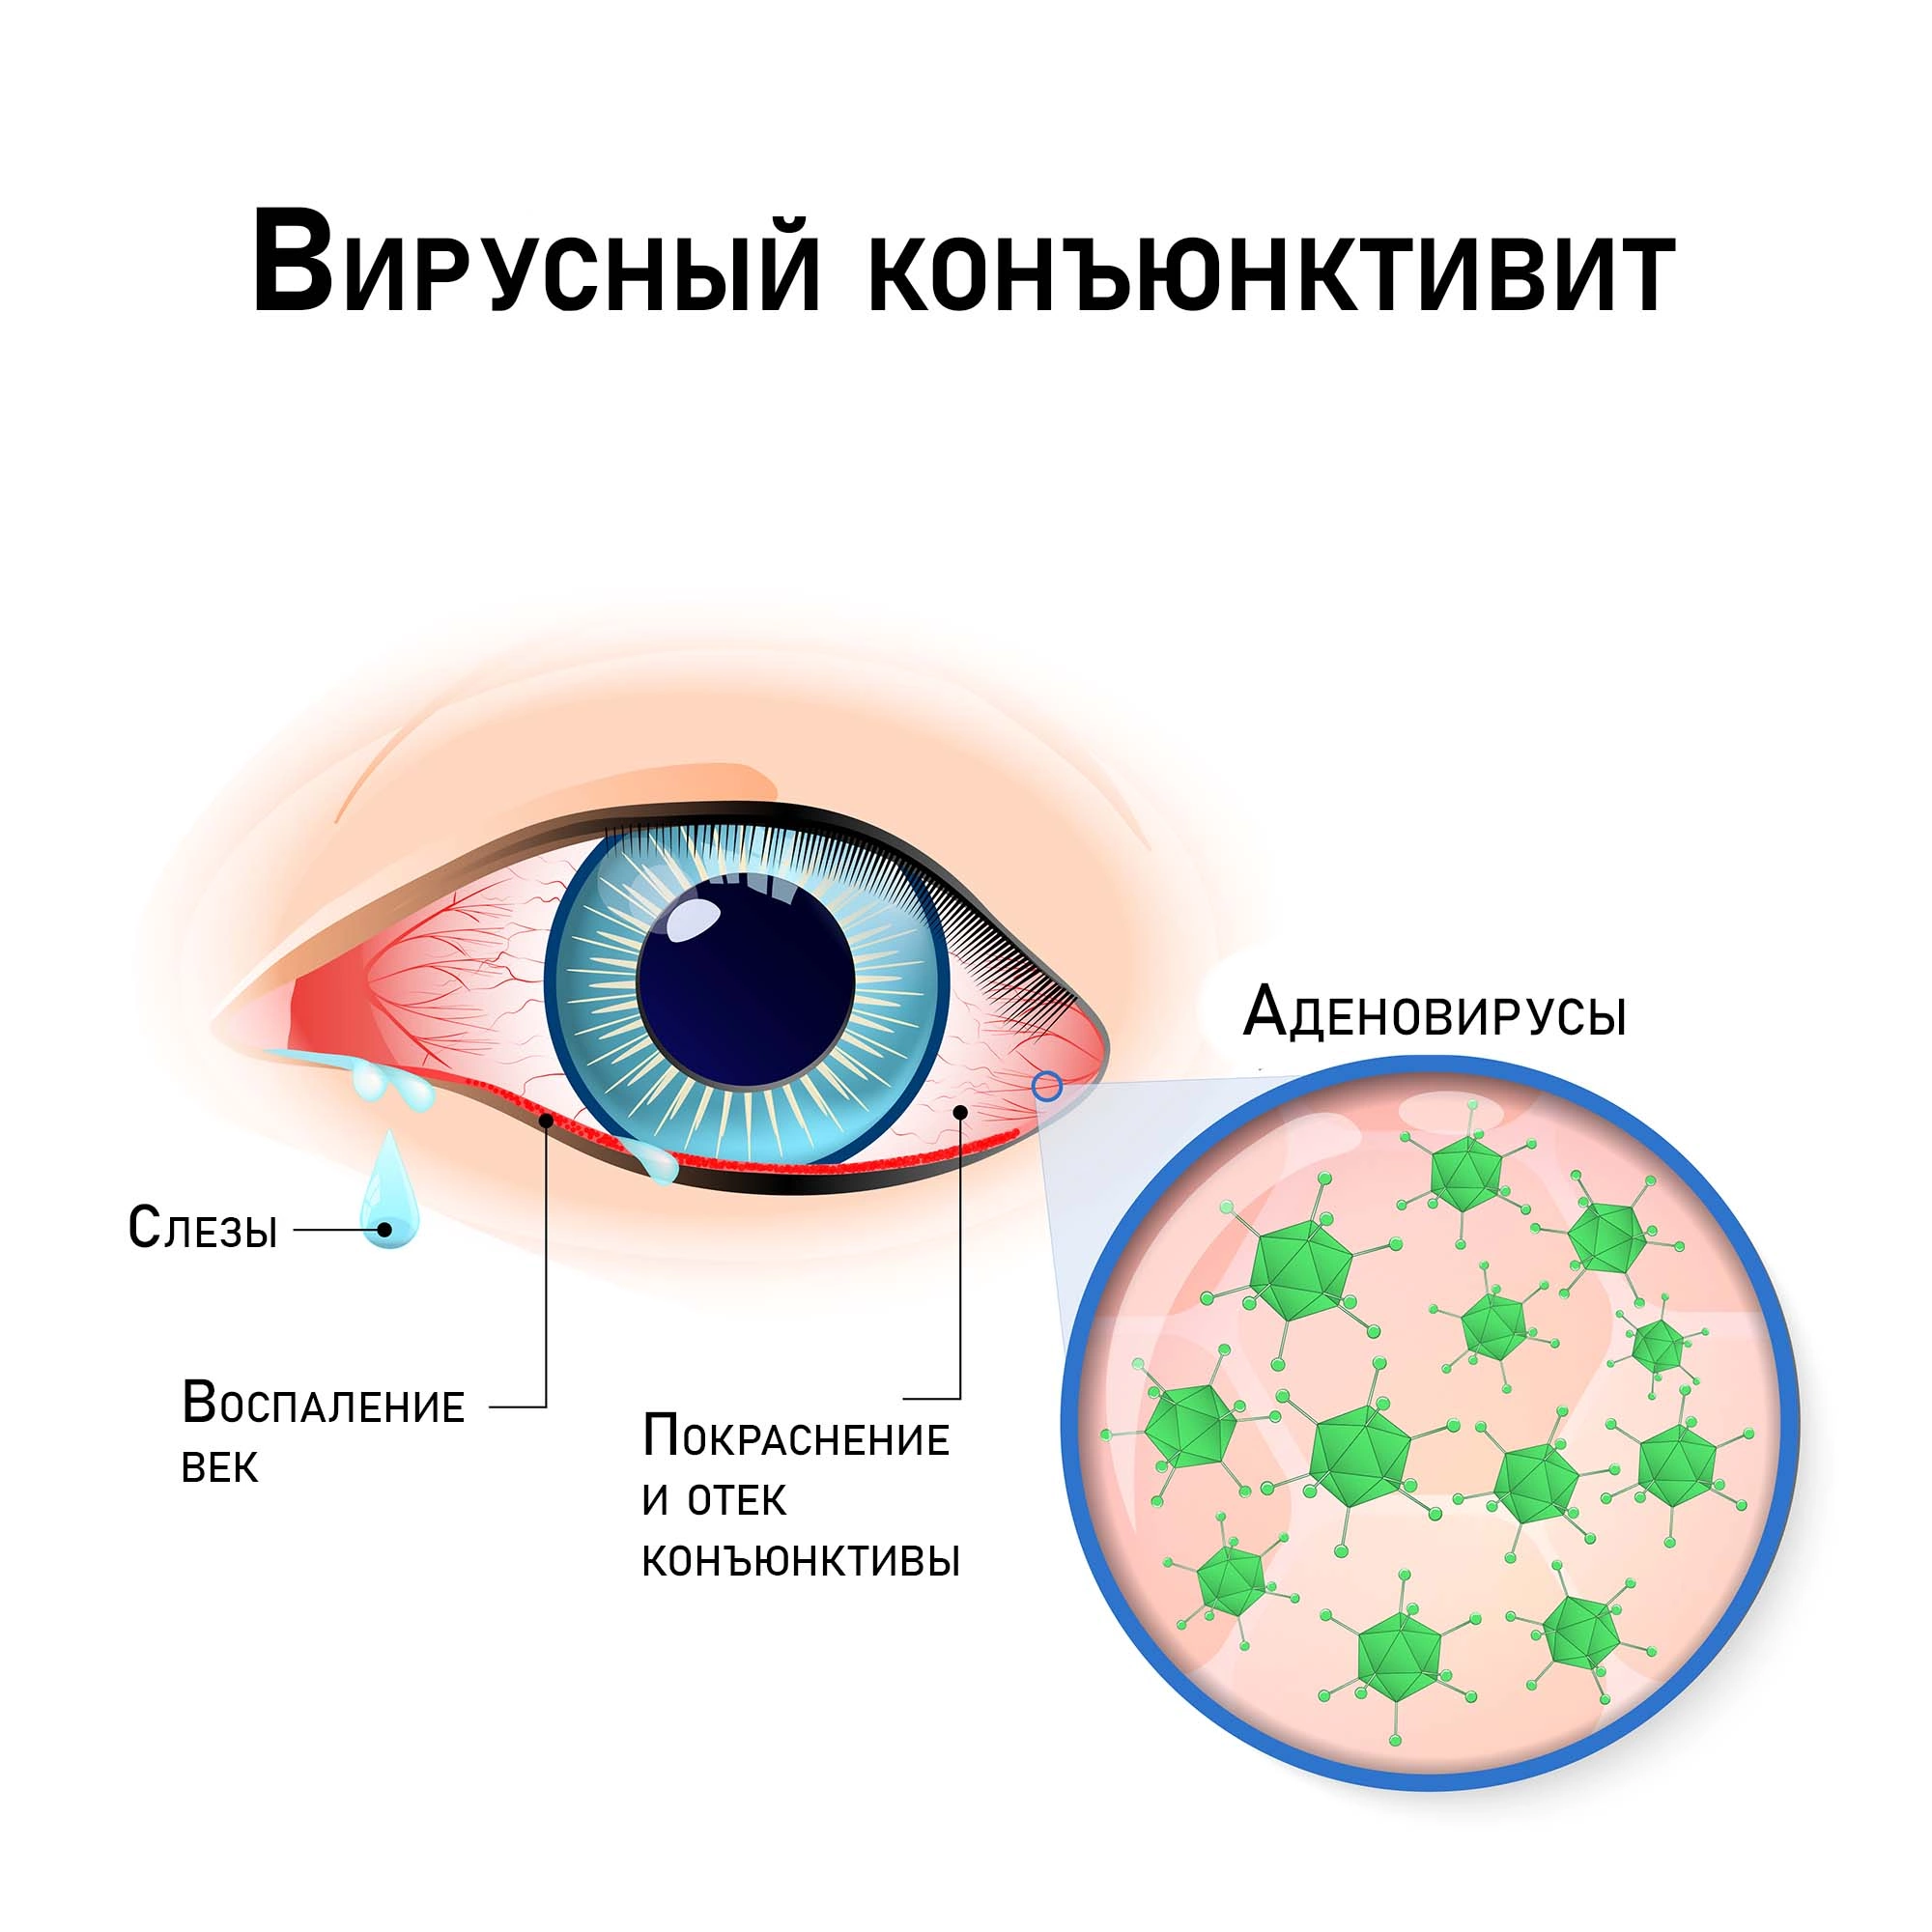 Вирусный конъюнктивит - Заболевания глаз - Справочник MSD Профессиональная версия